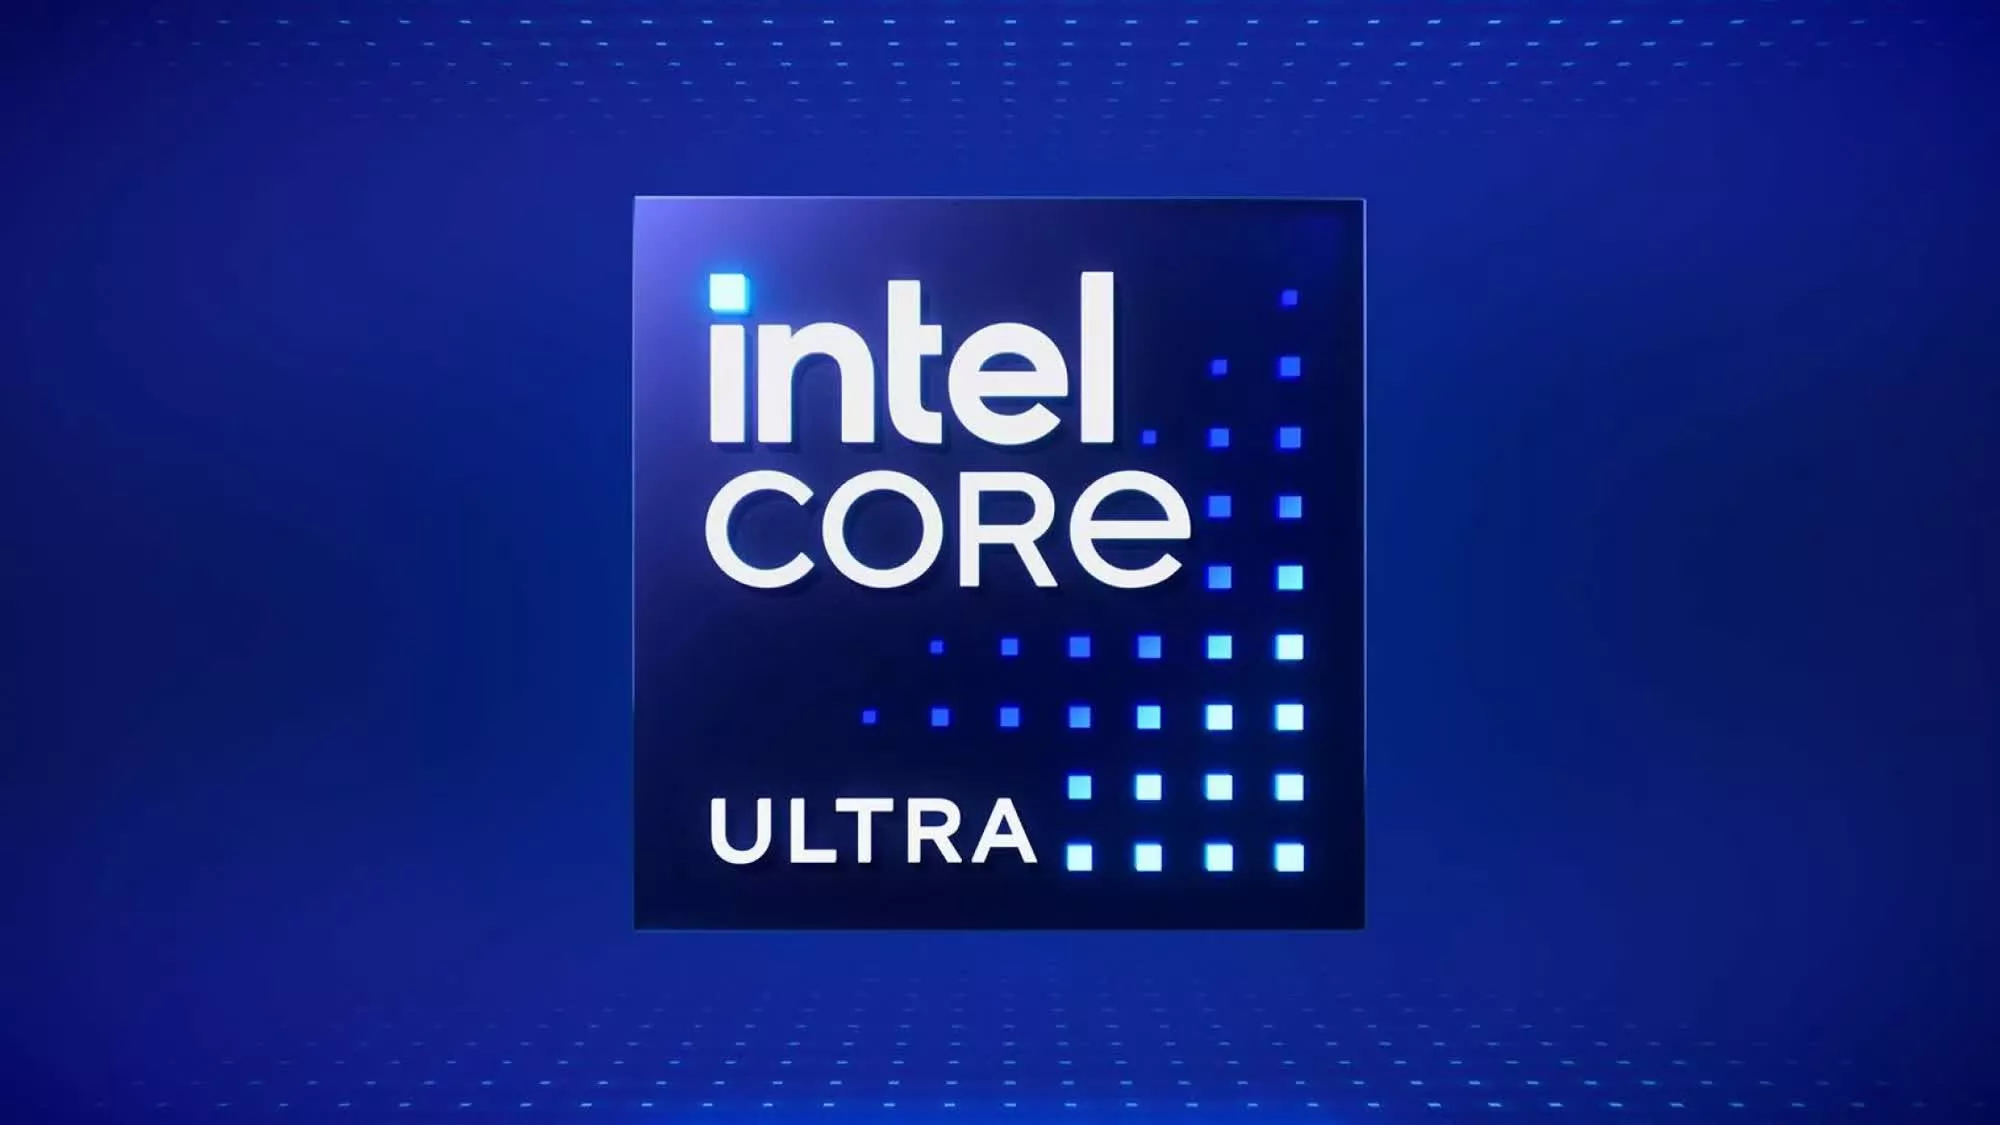 Intel Core Ultra 5 234V “Lunar Lake” CPU revealed in latest firmware